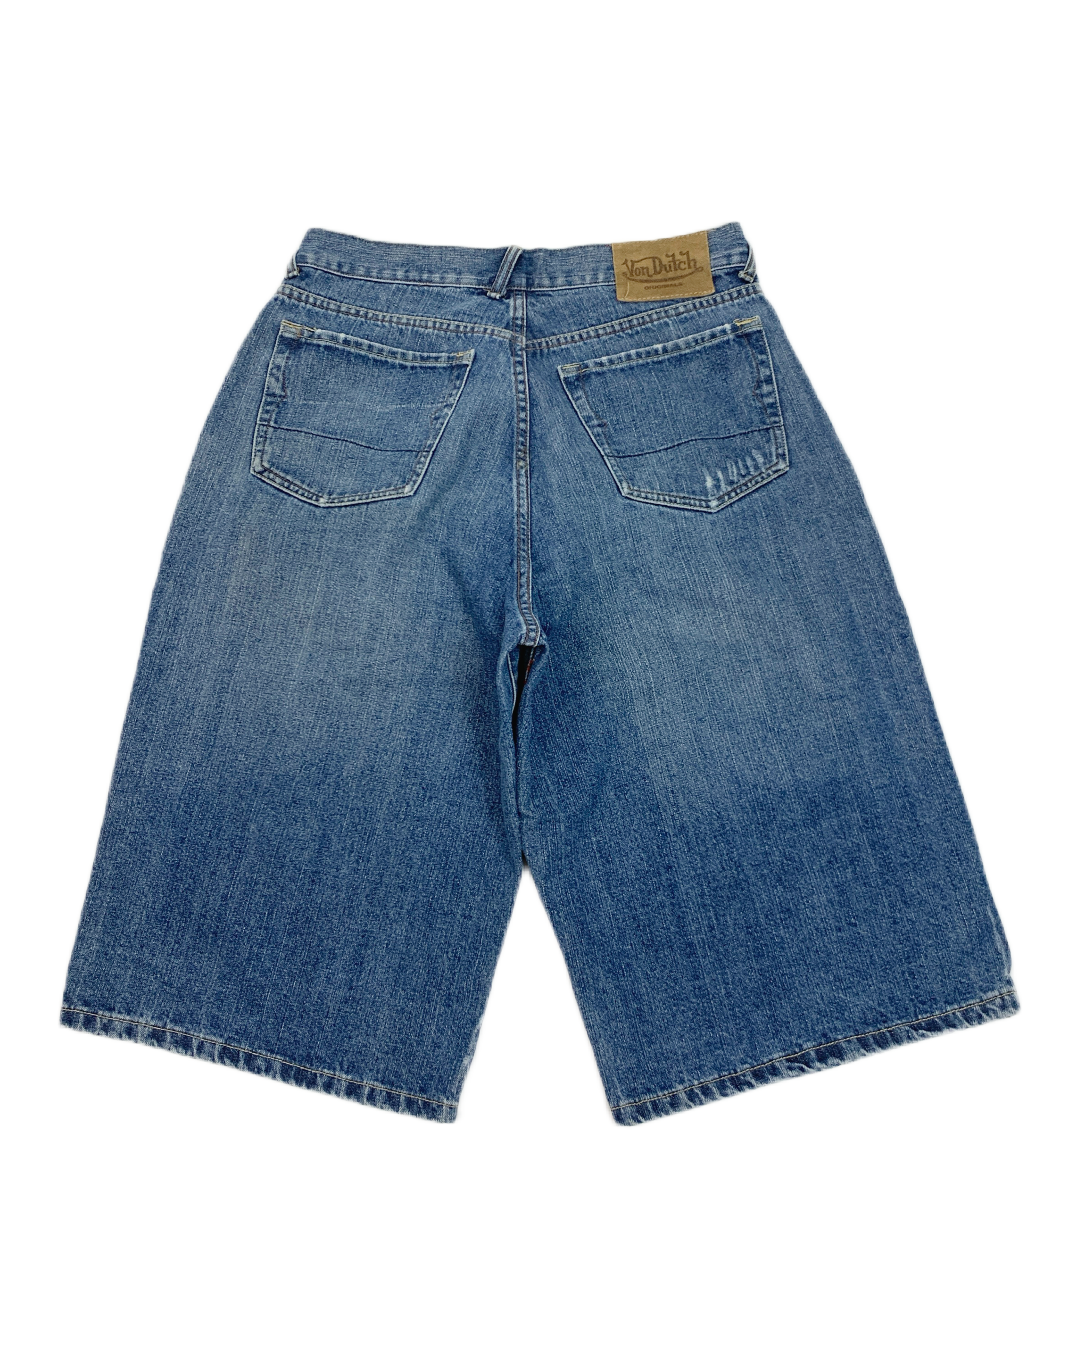 Von Dutch Vintage Shorts - 33